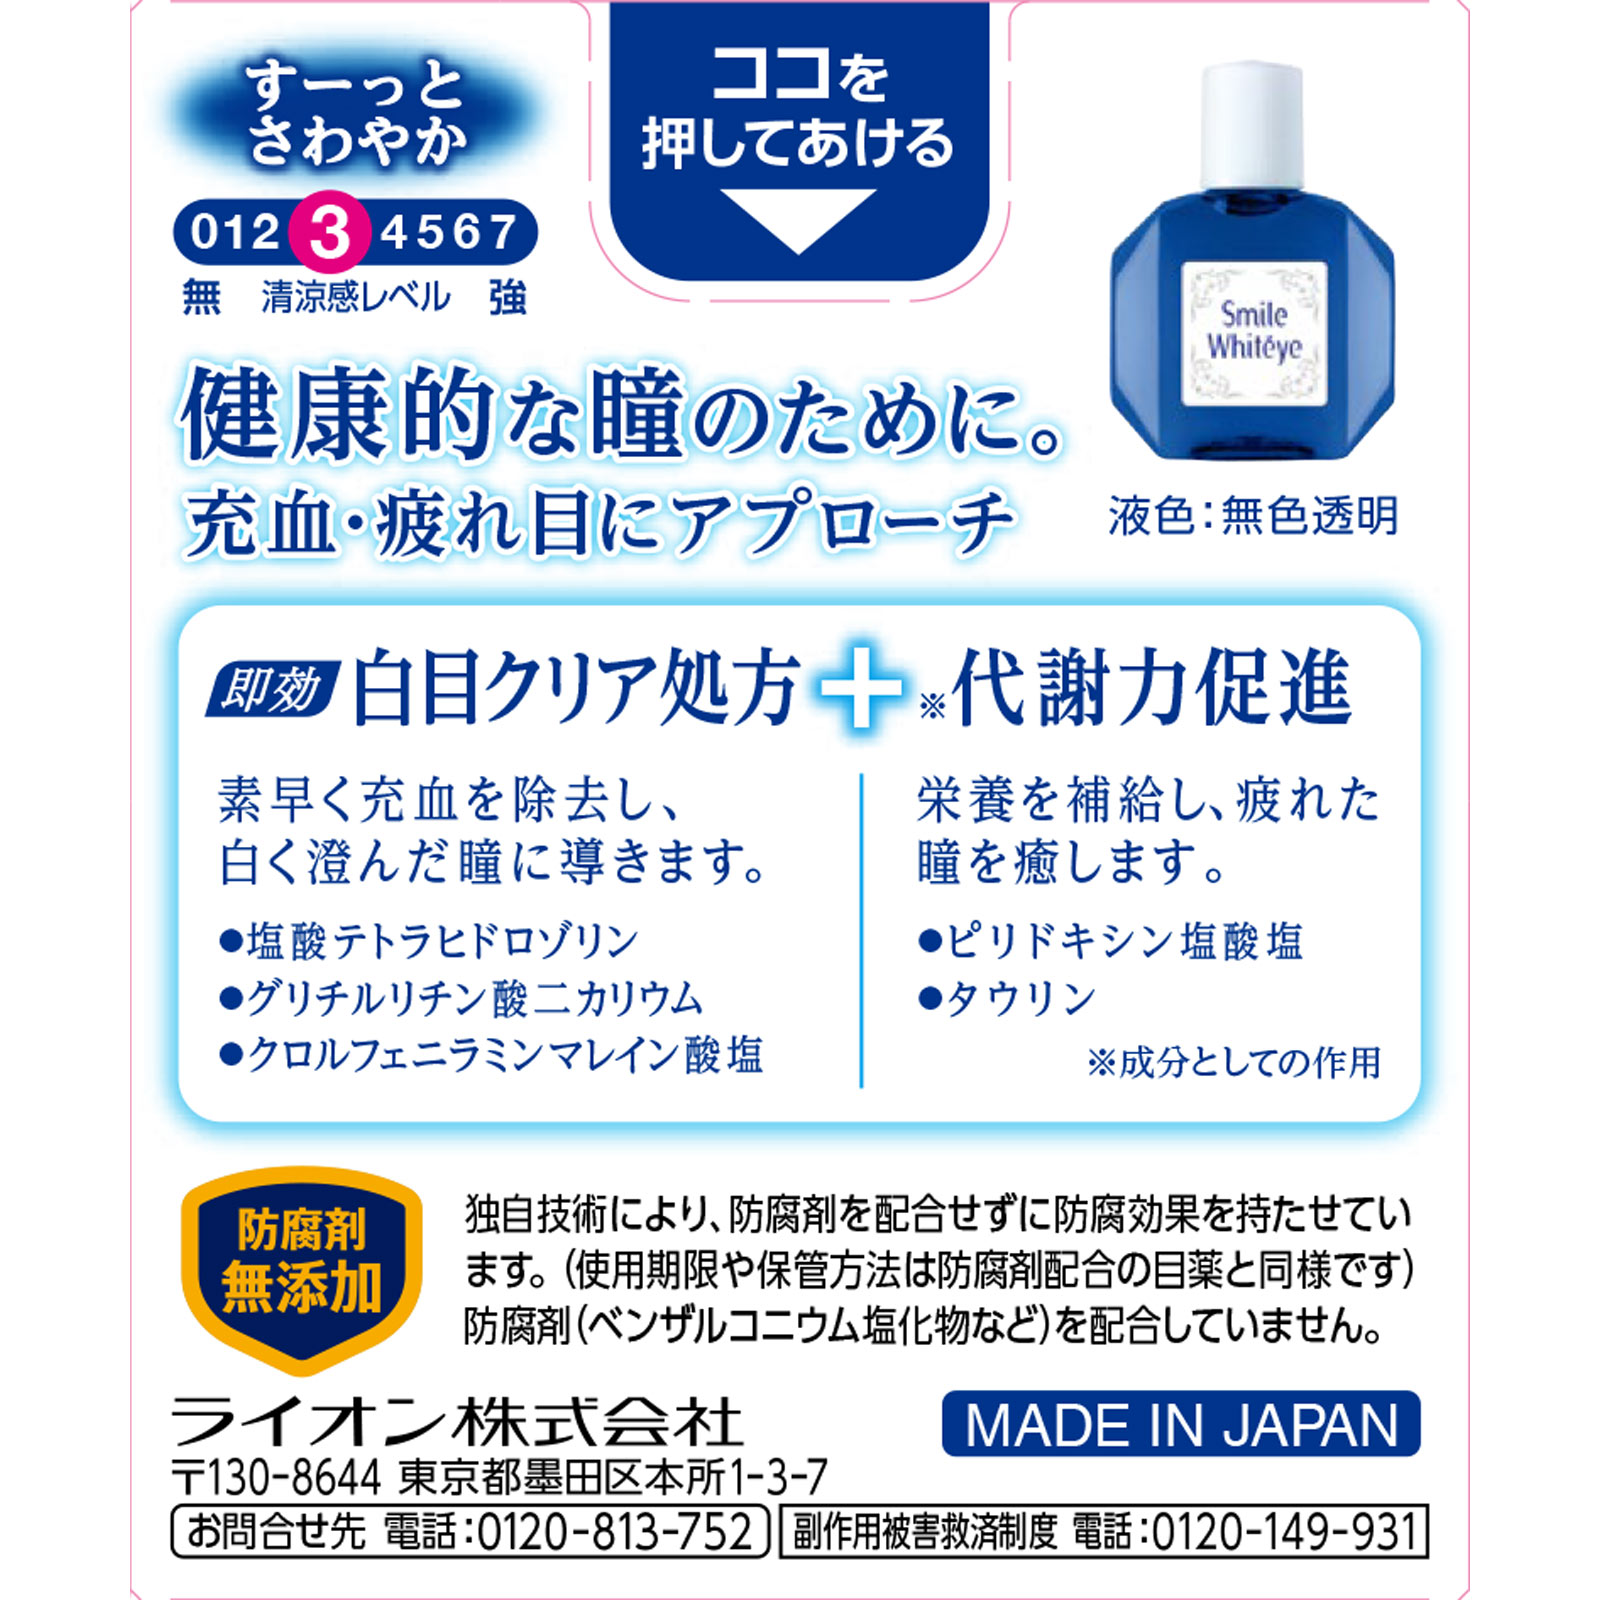 スマイルホワイティエｎ 15mL 【第二類医薬品】: 医薬品・衛生用品 Tomod's ONLINE SHOP